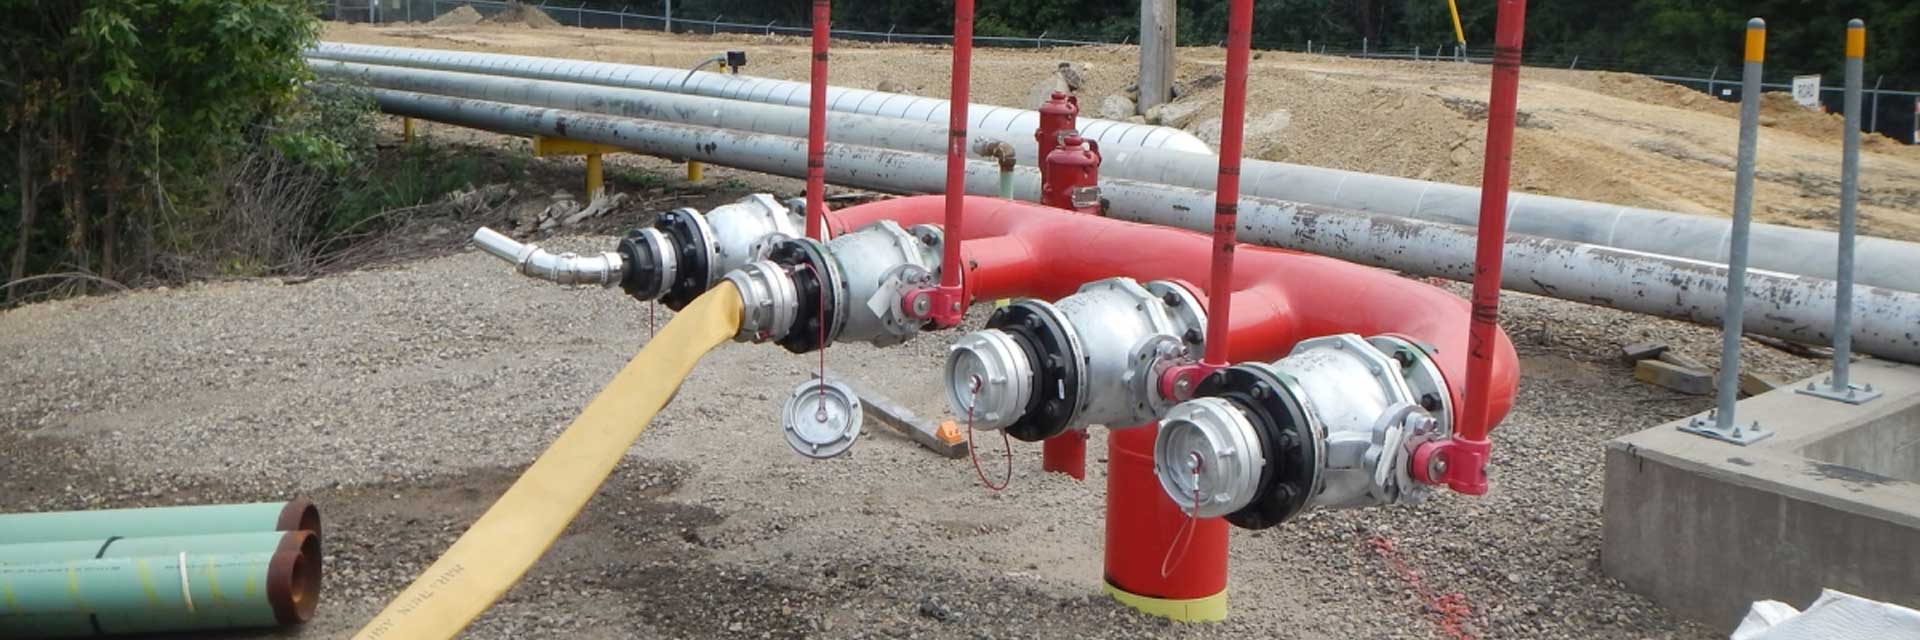 Системы противопожарного водоснабжения — ТПК Нижний Новгород